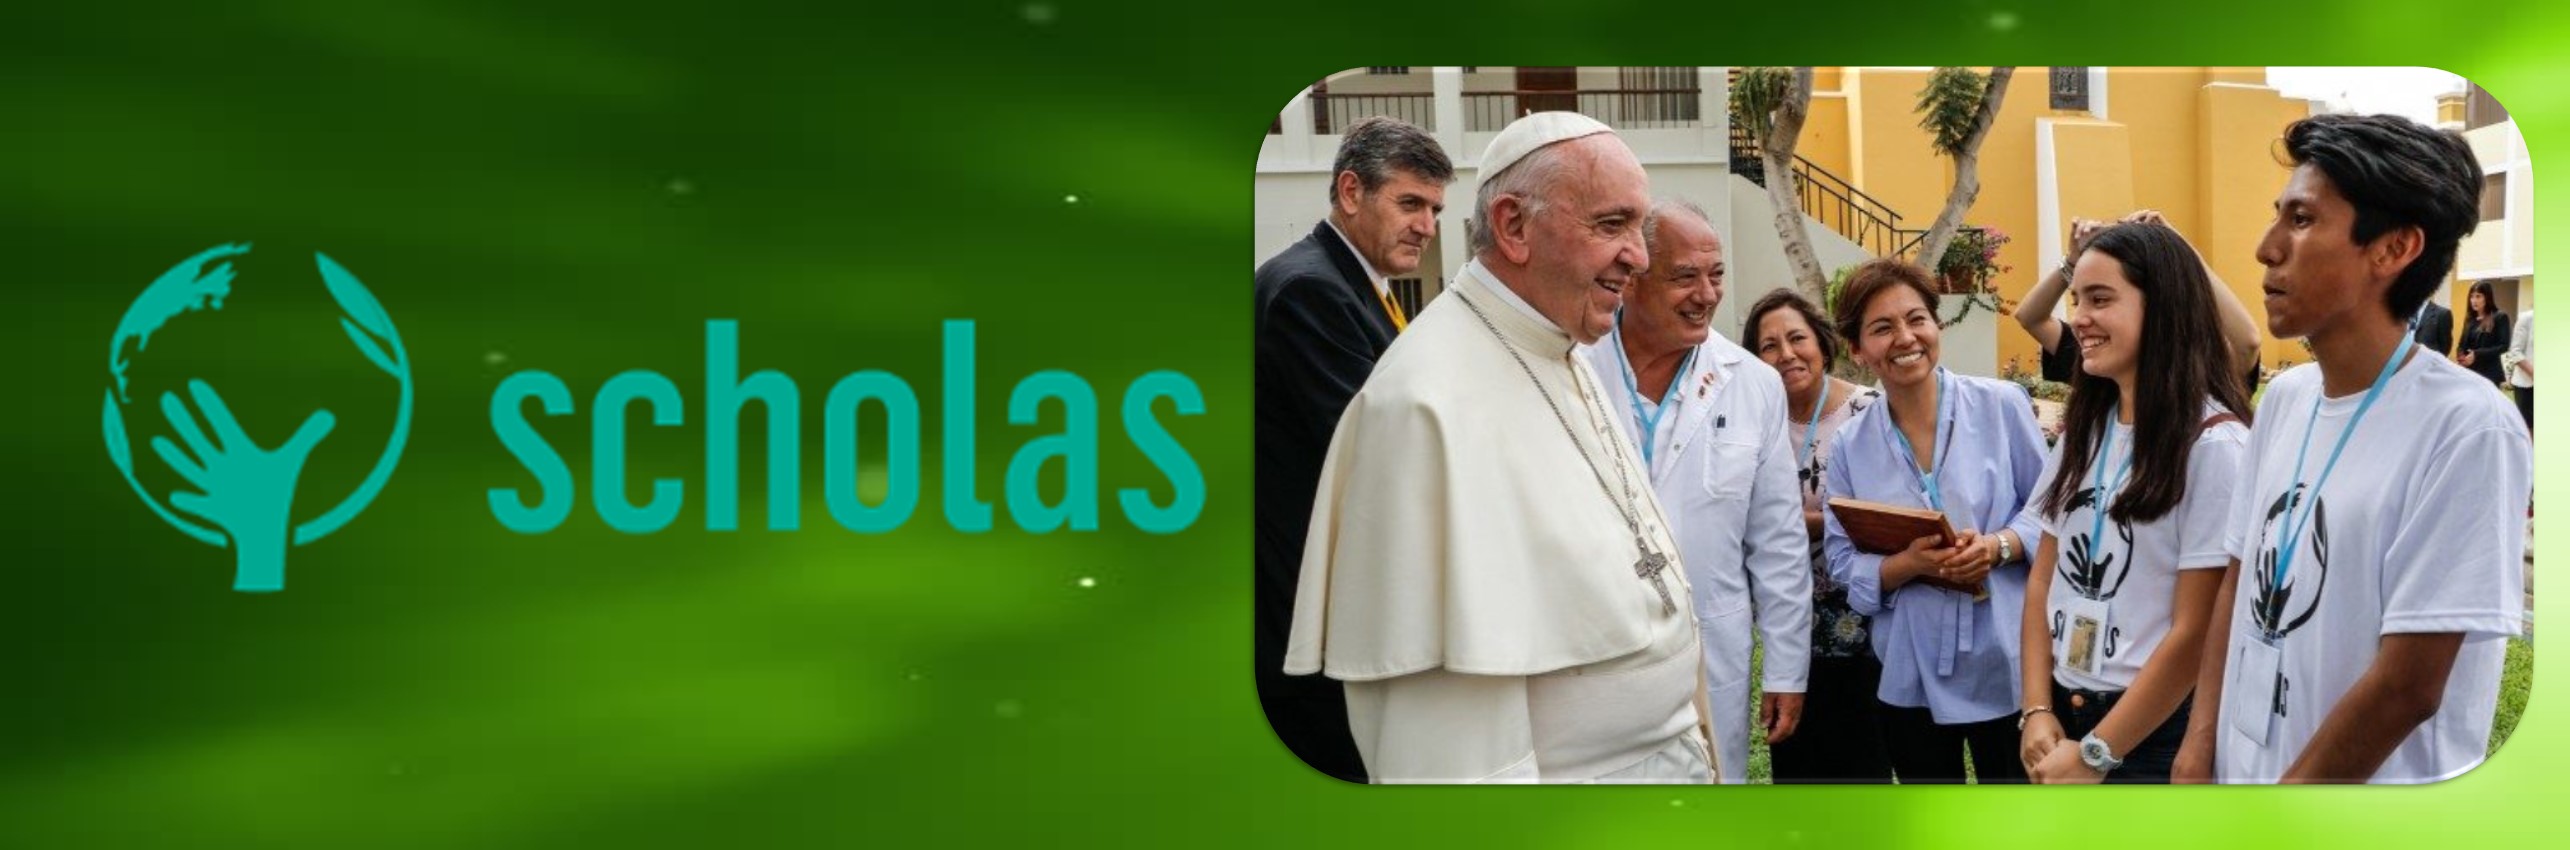 En el próximo Día Mundial del Ambiente se encontrarán Scholas, el Papa y las Primeras Damas